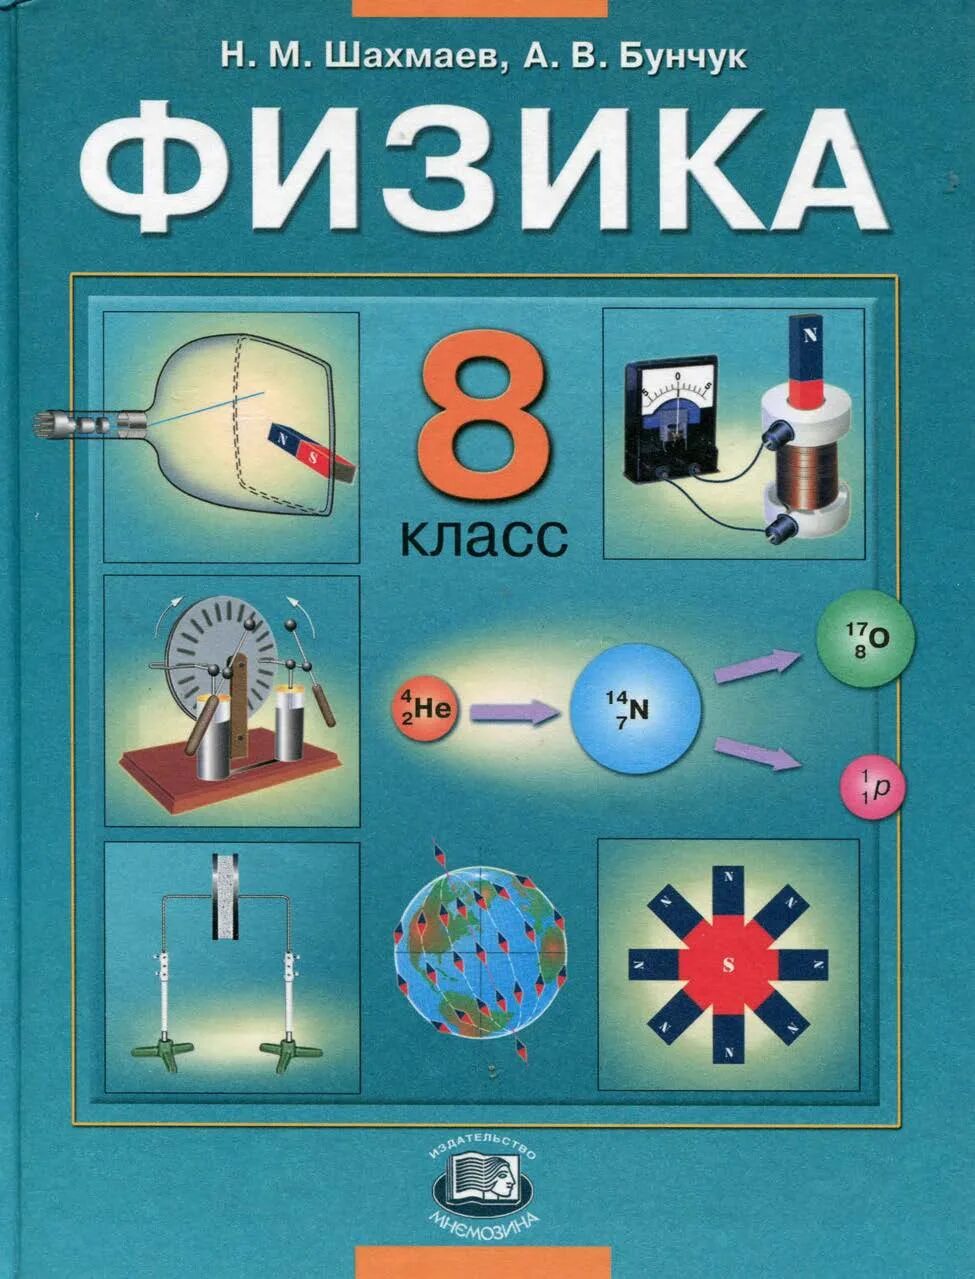 Пр 8 физика. Учебник физики. Учебник физики 8 класс. 8 Класс. Физика.. С В физике.